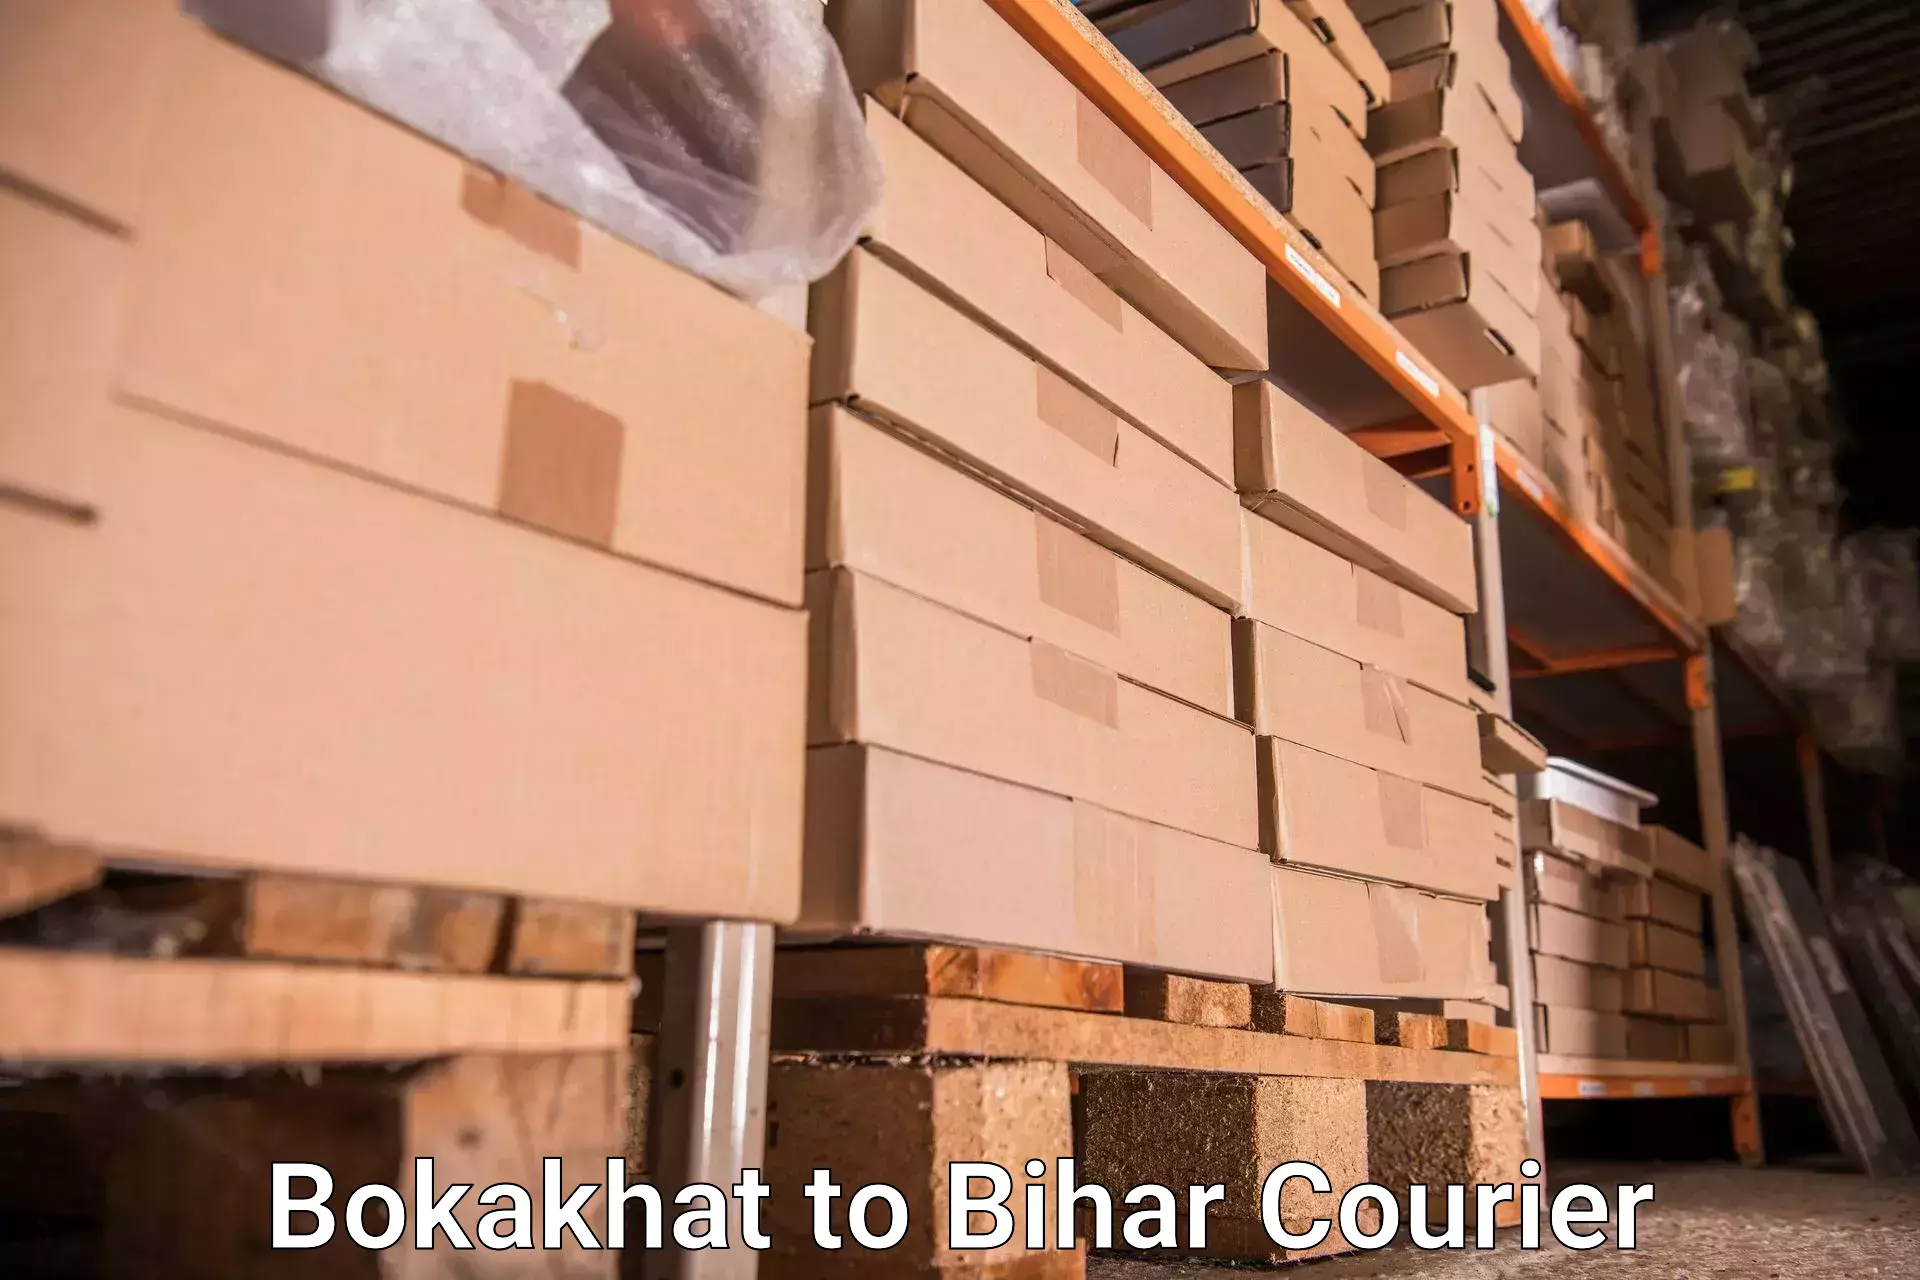 Luggage transport company Bokakhat to Kochas